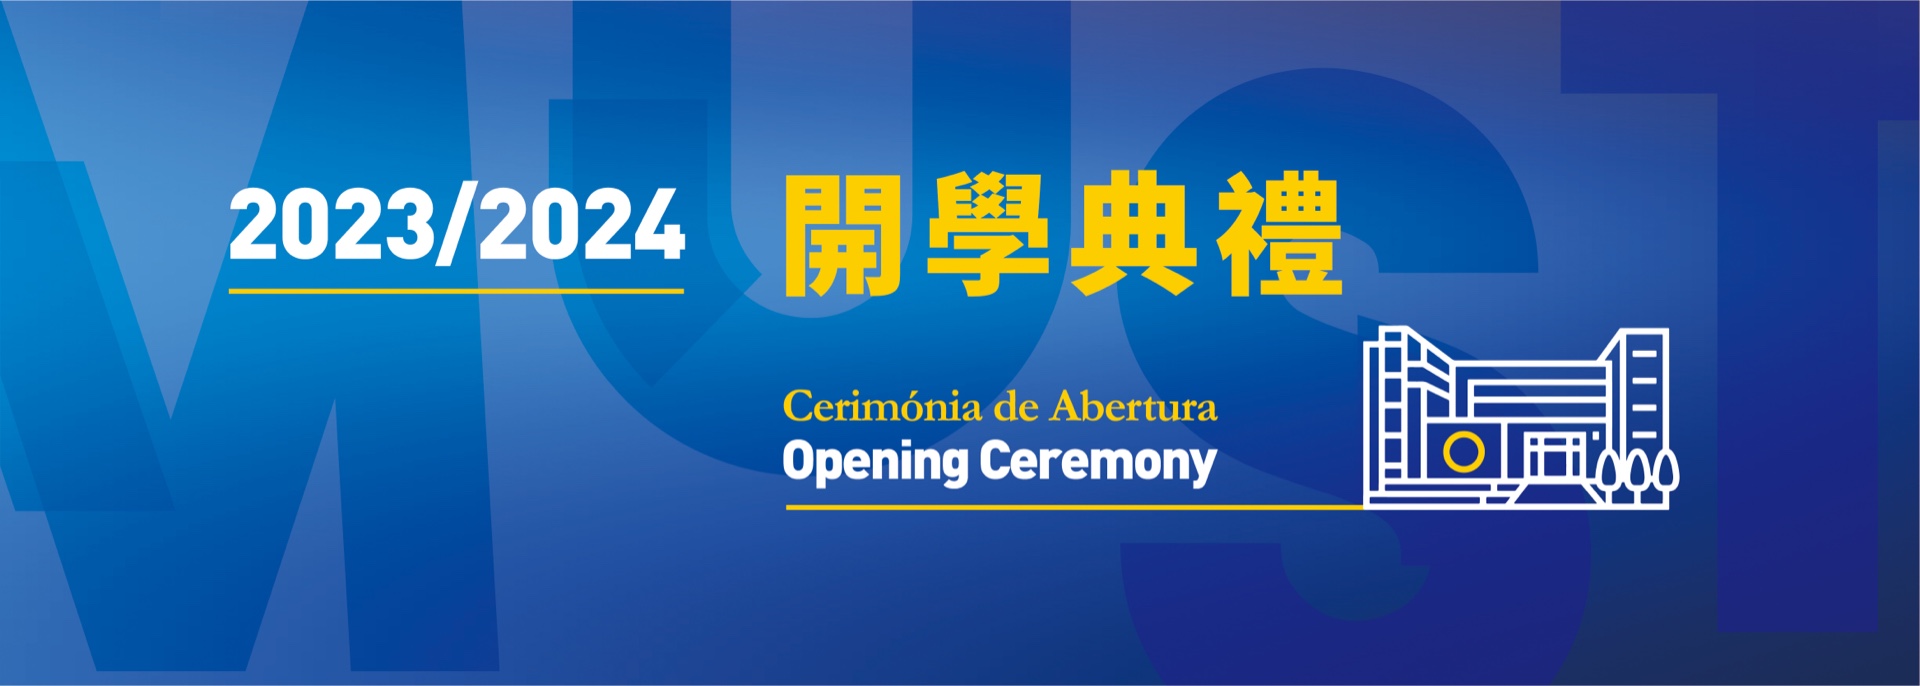 2023/2024 Opening Ceremony